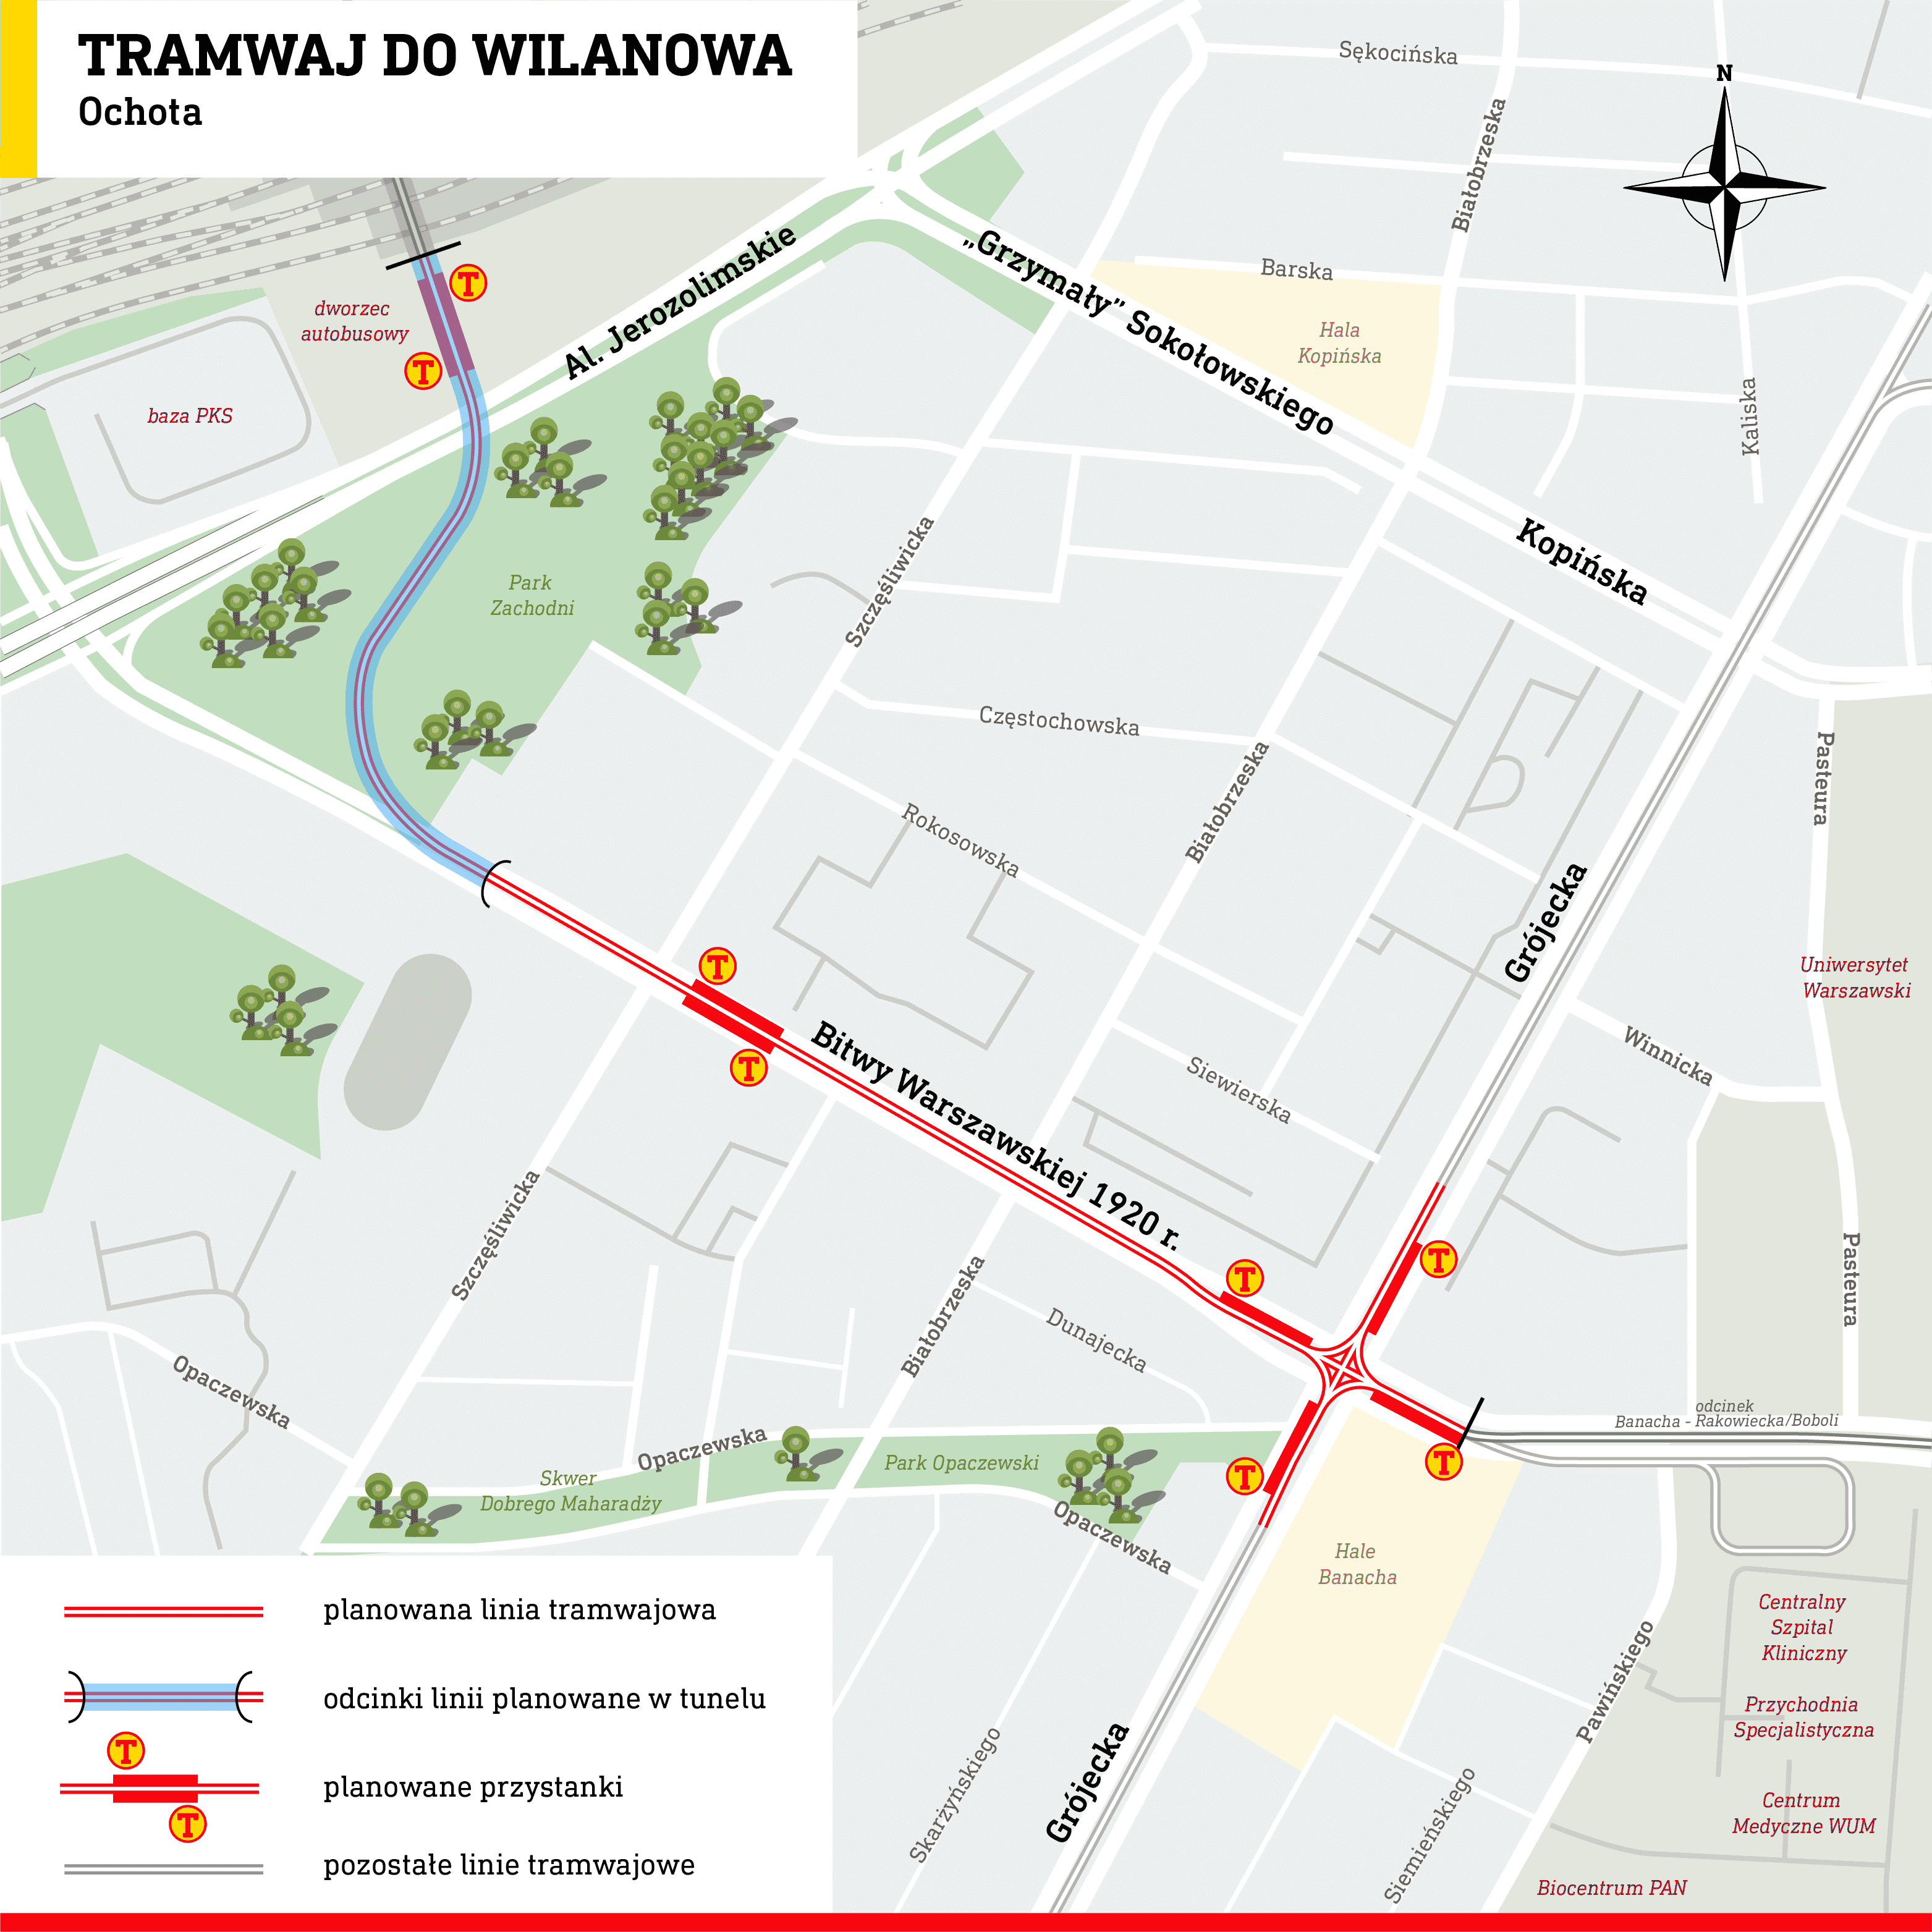 Pierwszy podziemny tramwaj w Warszawie - trasa